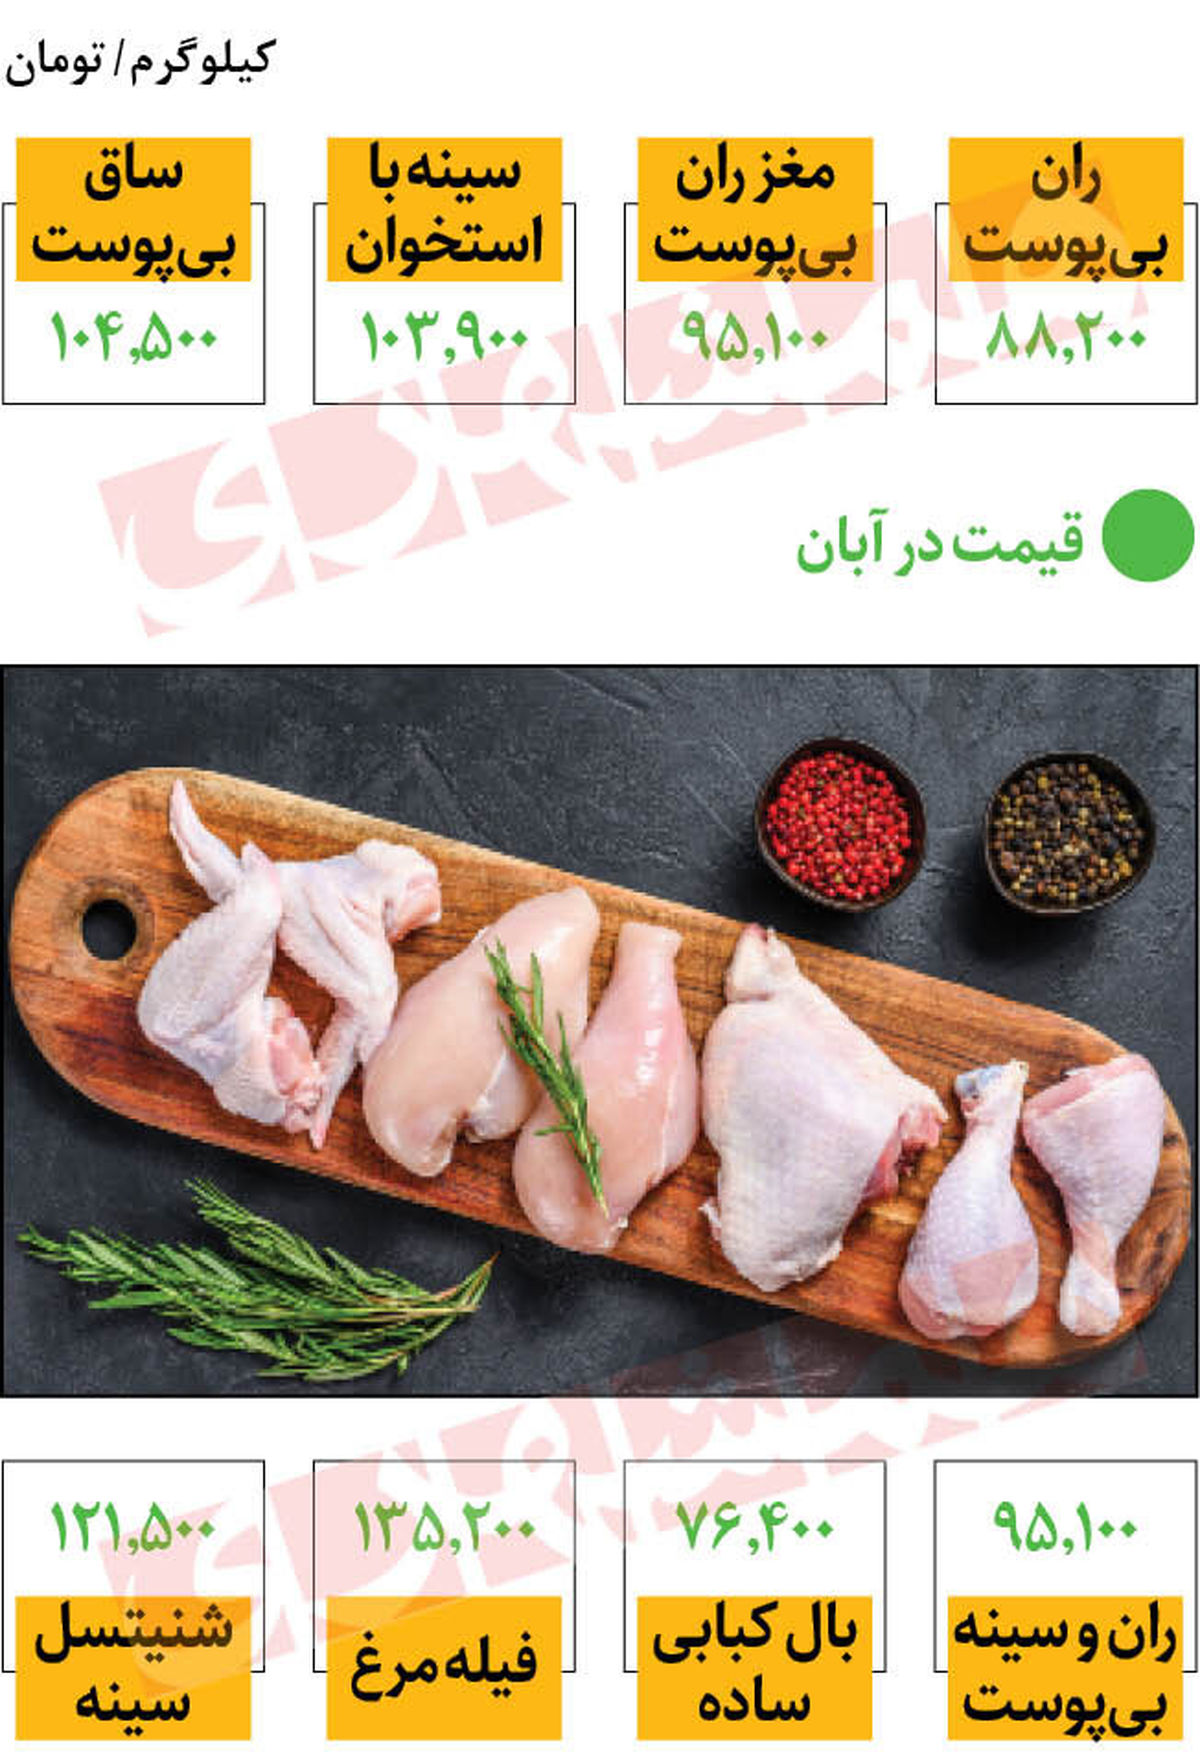 قیمت مرغ از گوشت قرمز سبقت گرفت | قیمت مرغ گرم در بازار امروز چند؟